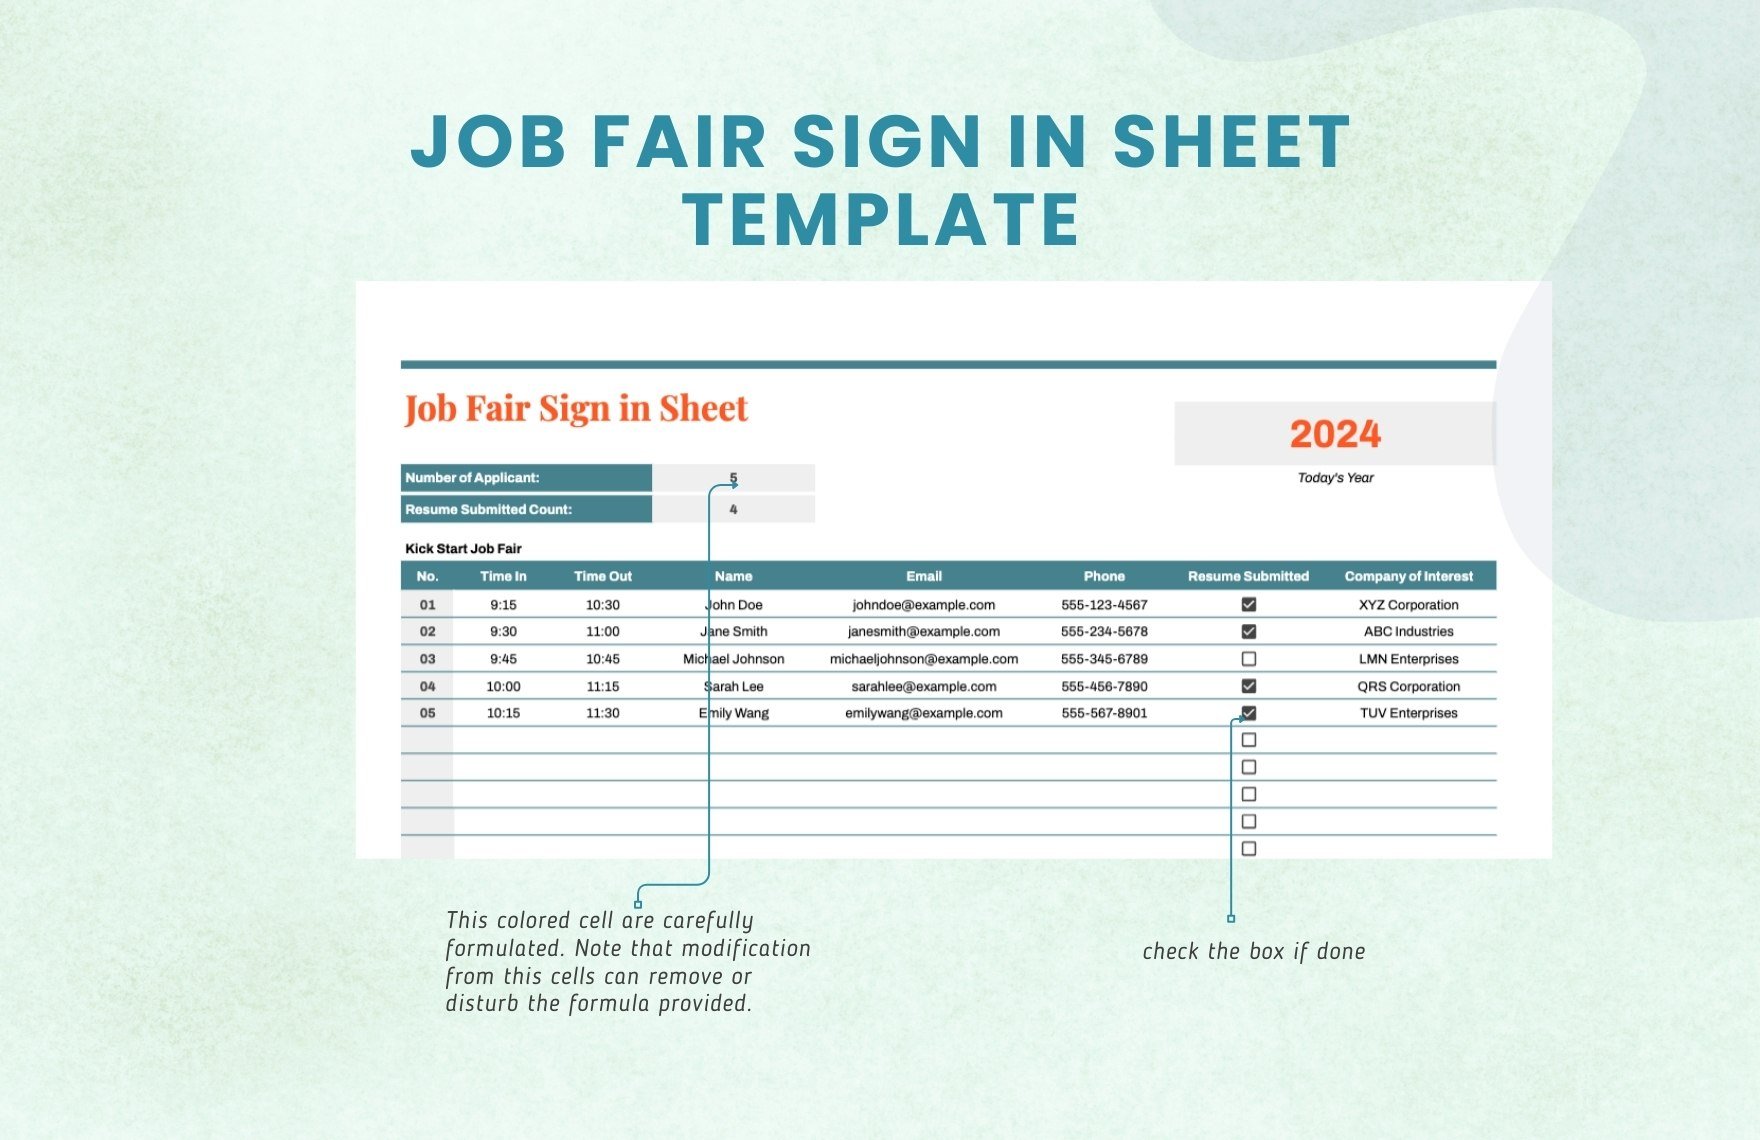 Job Fair Sign in Sheet Template